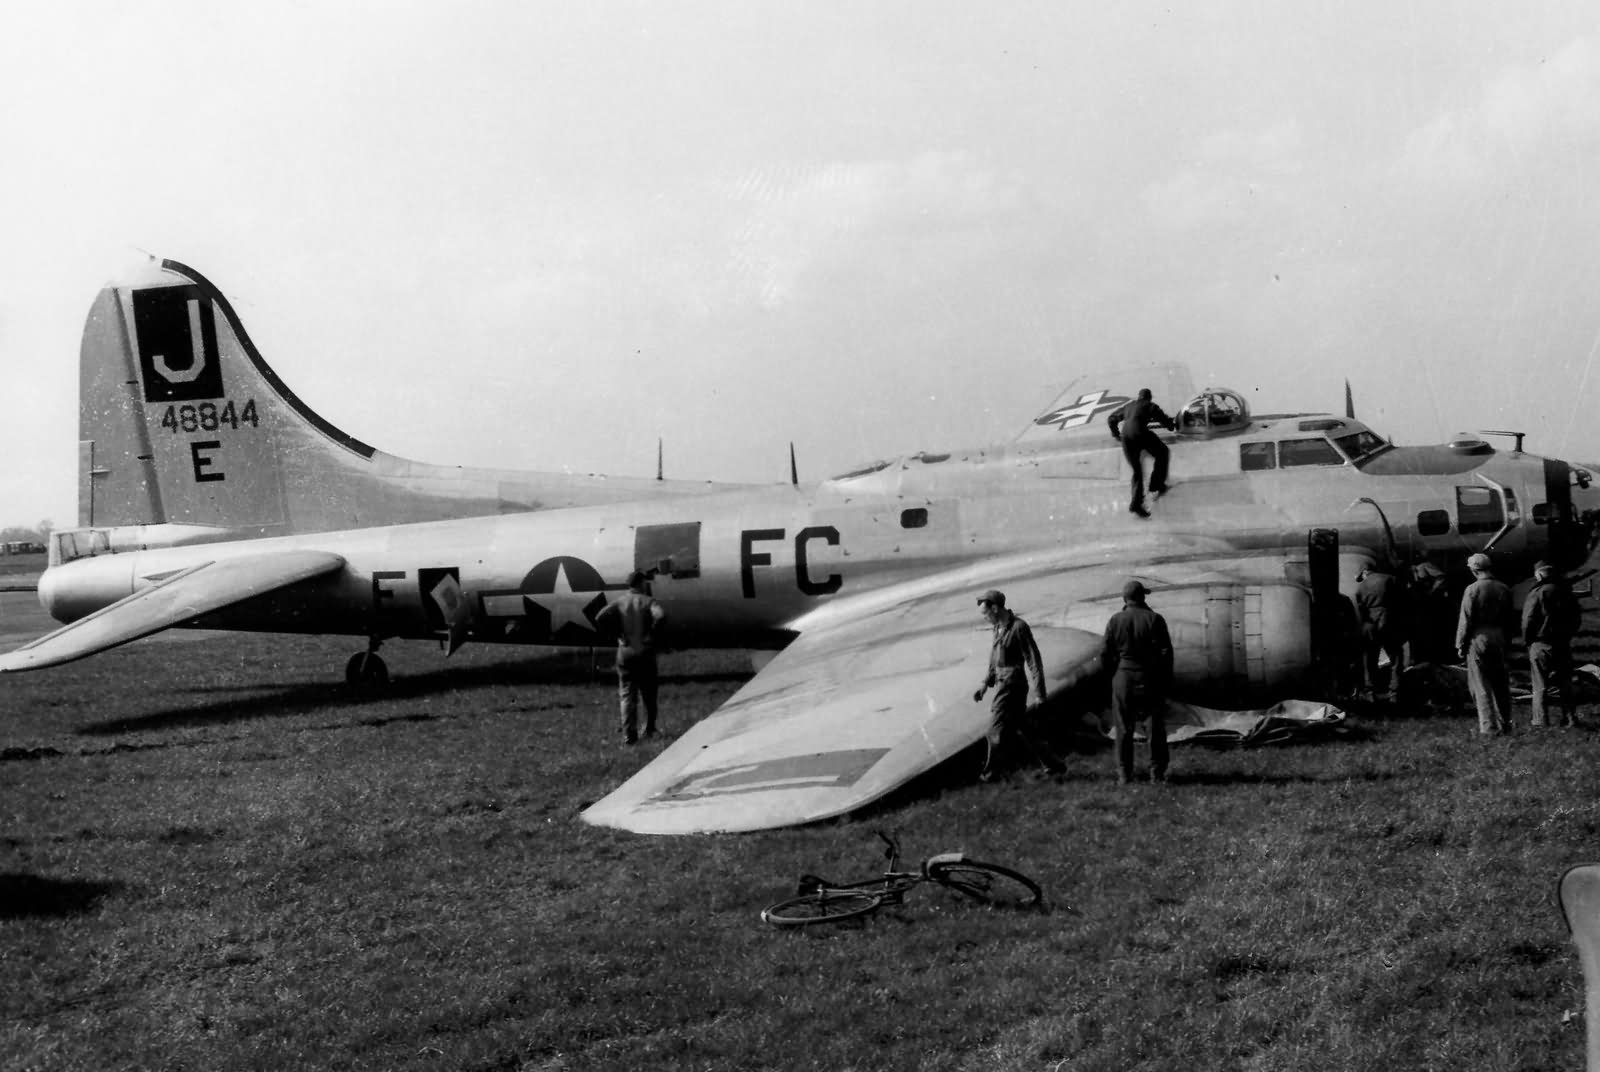 B-17 #44-8844